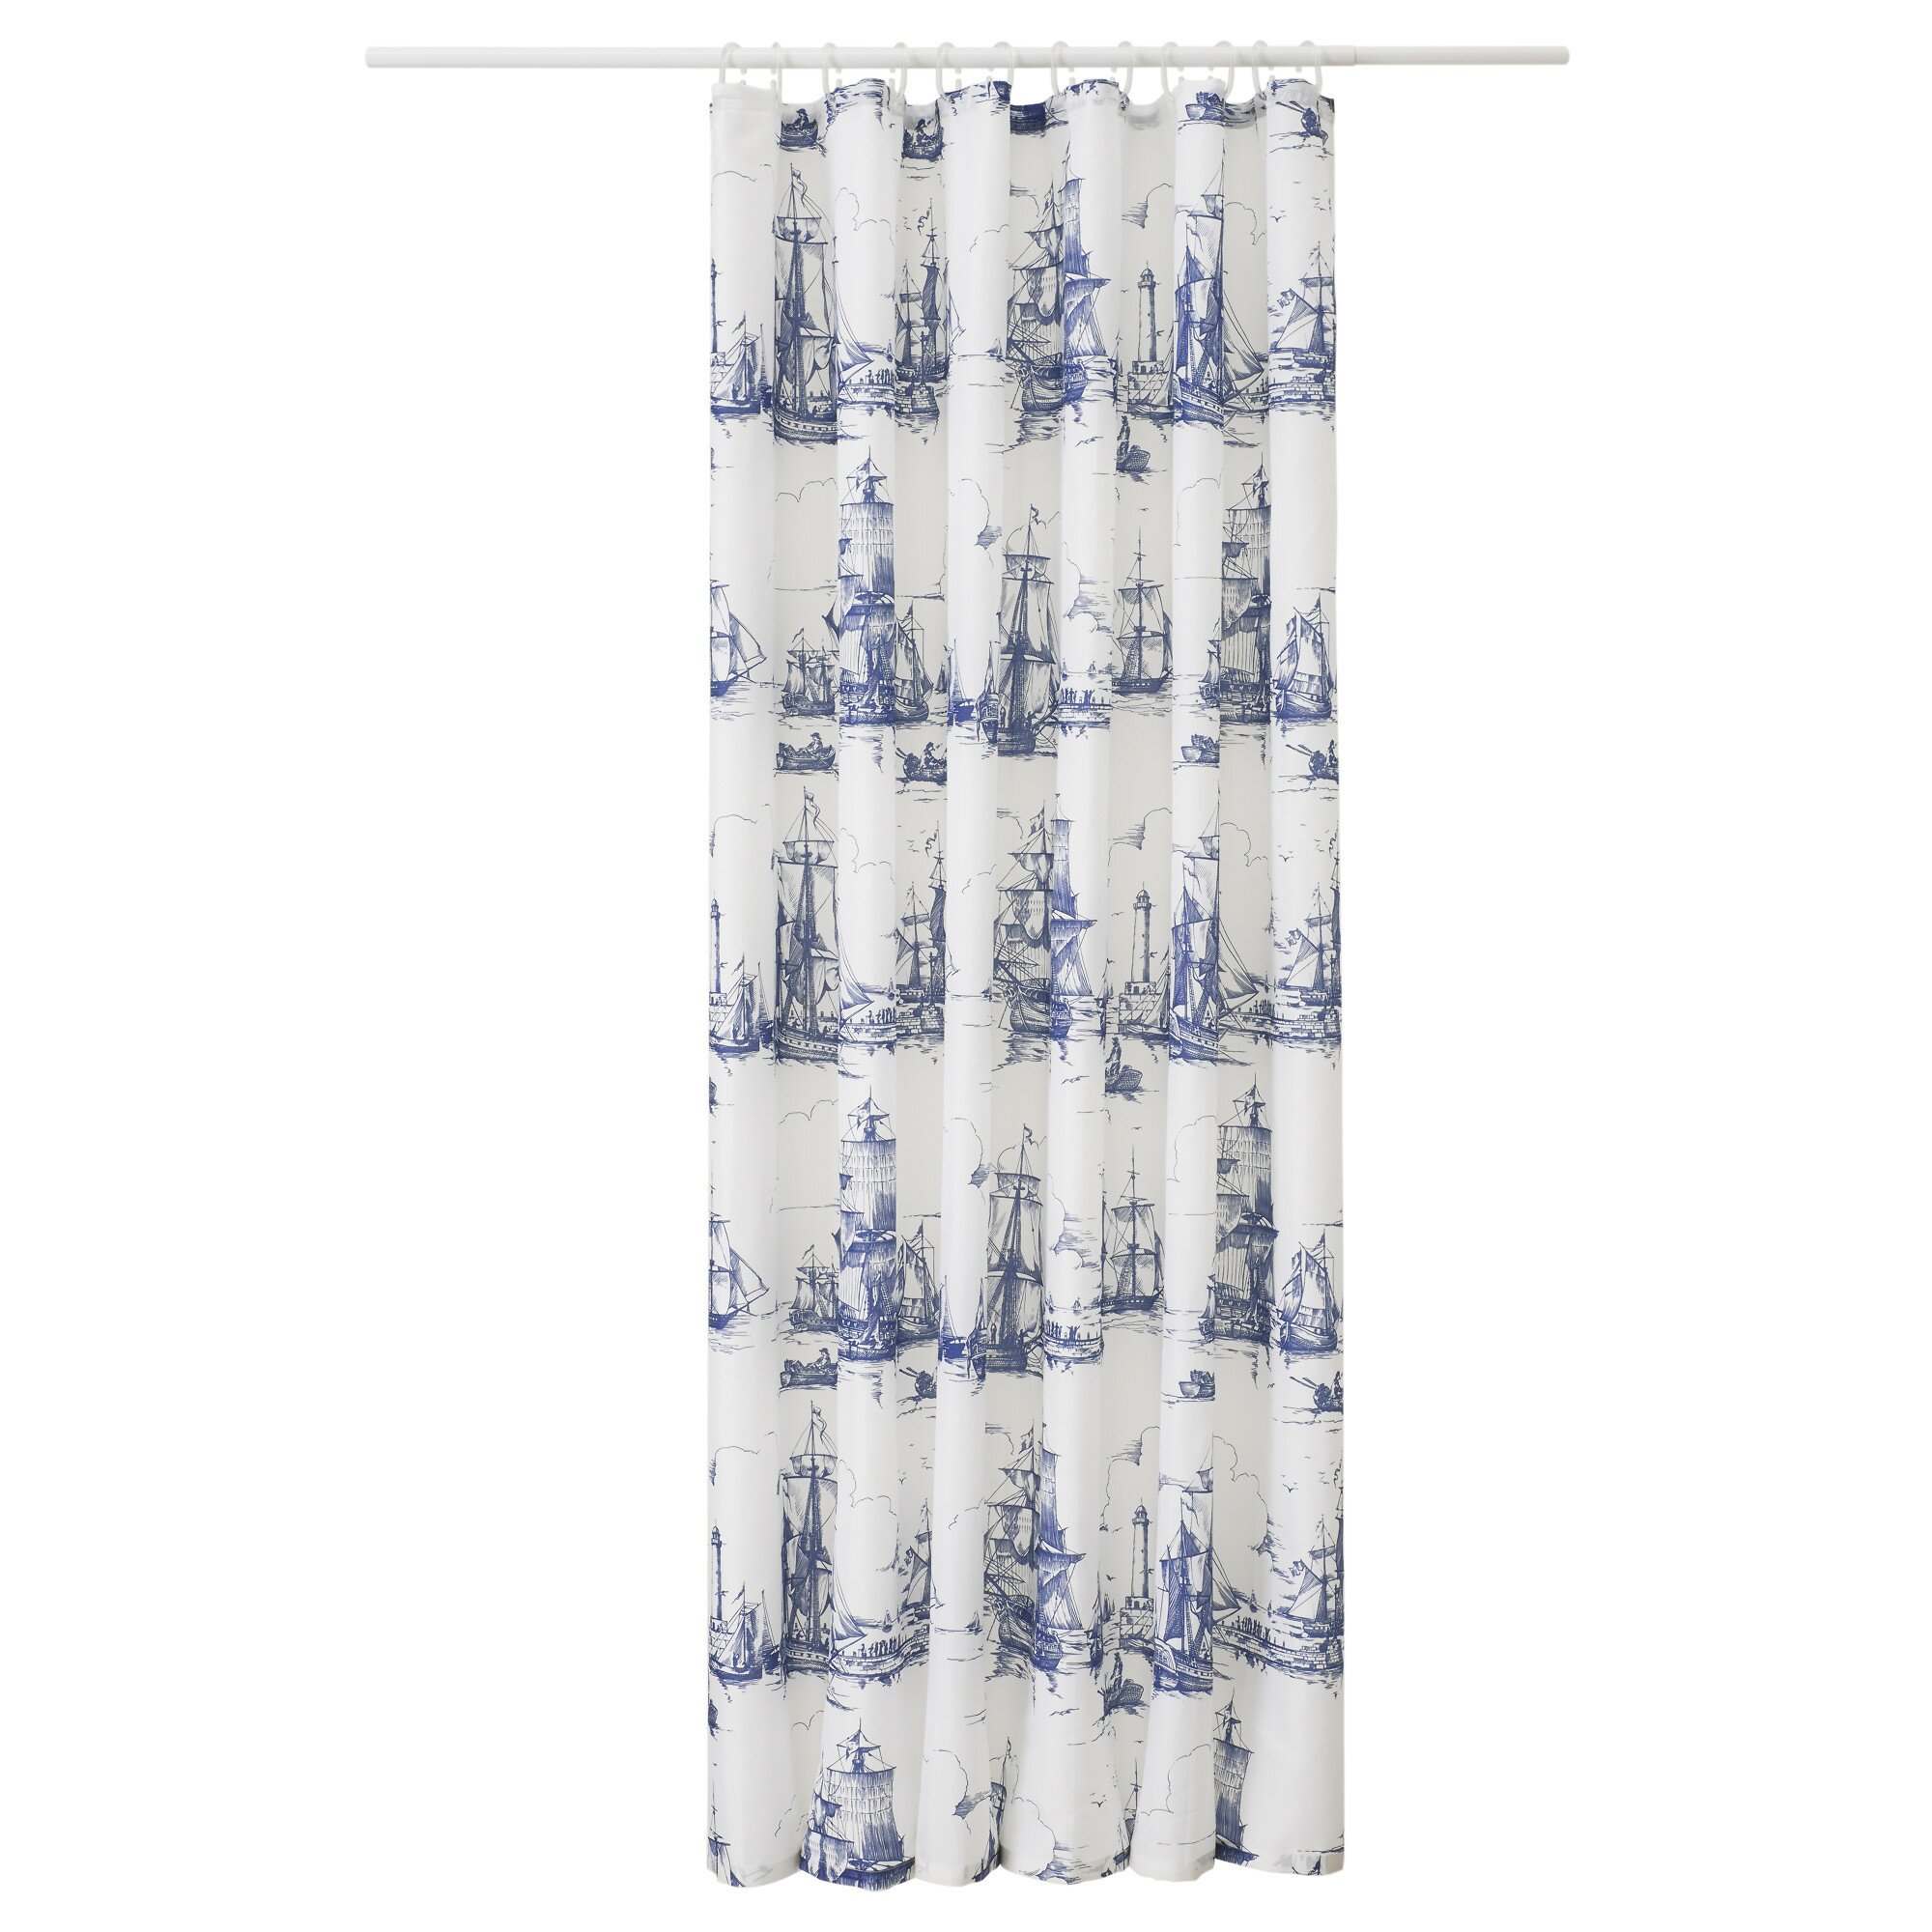 Narrow Shower Curtain | Octopus Shower Curtain Ikea | Ikea Shower Curtain